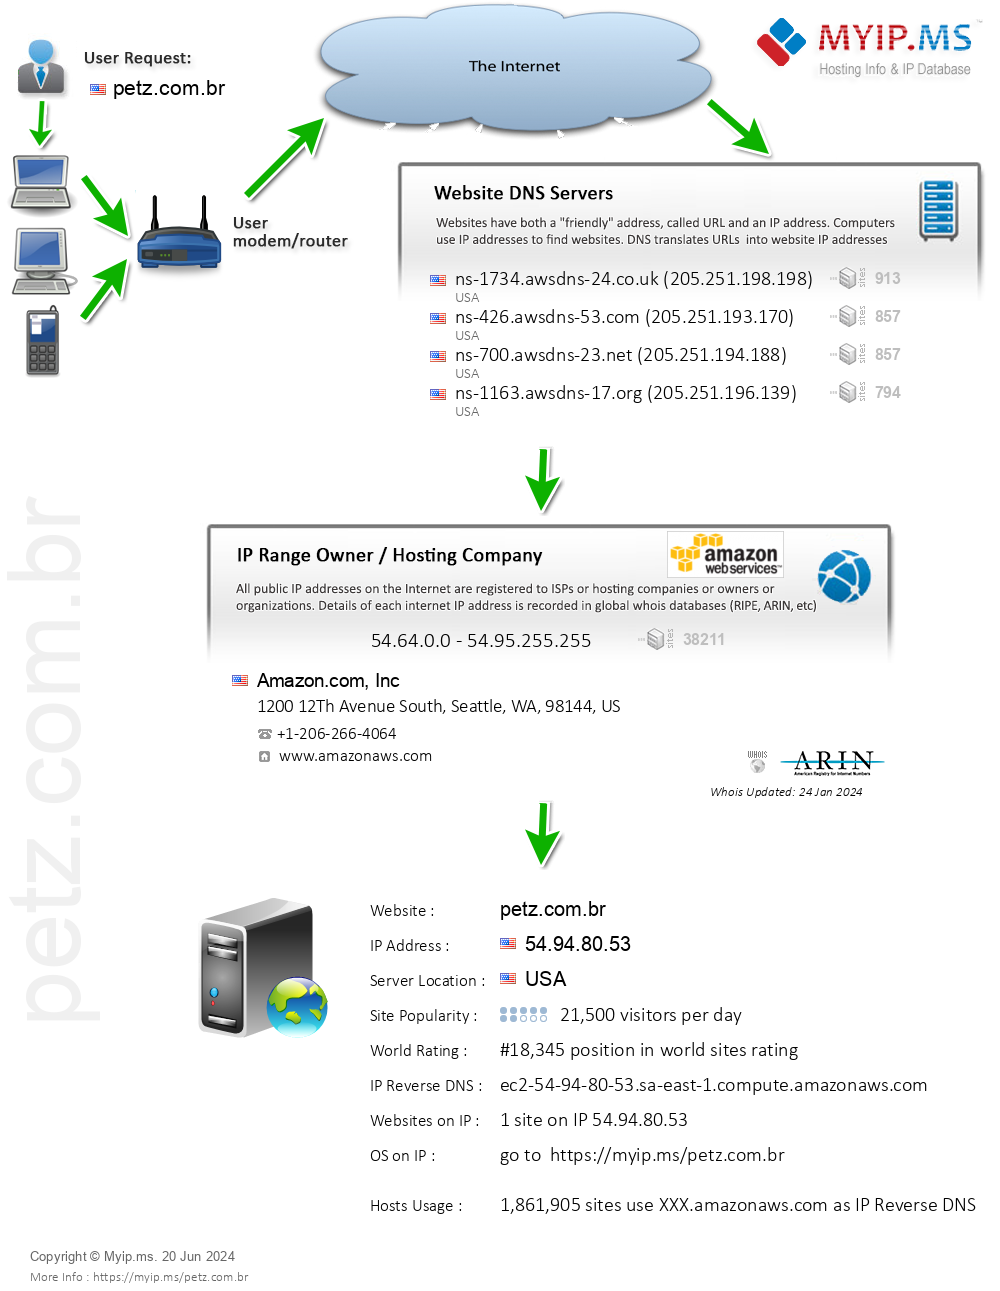 Petz.com.br - Website Hosting Visual IP Diagram